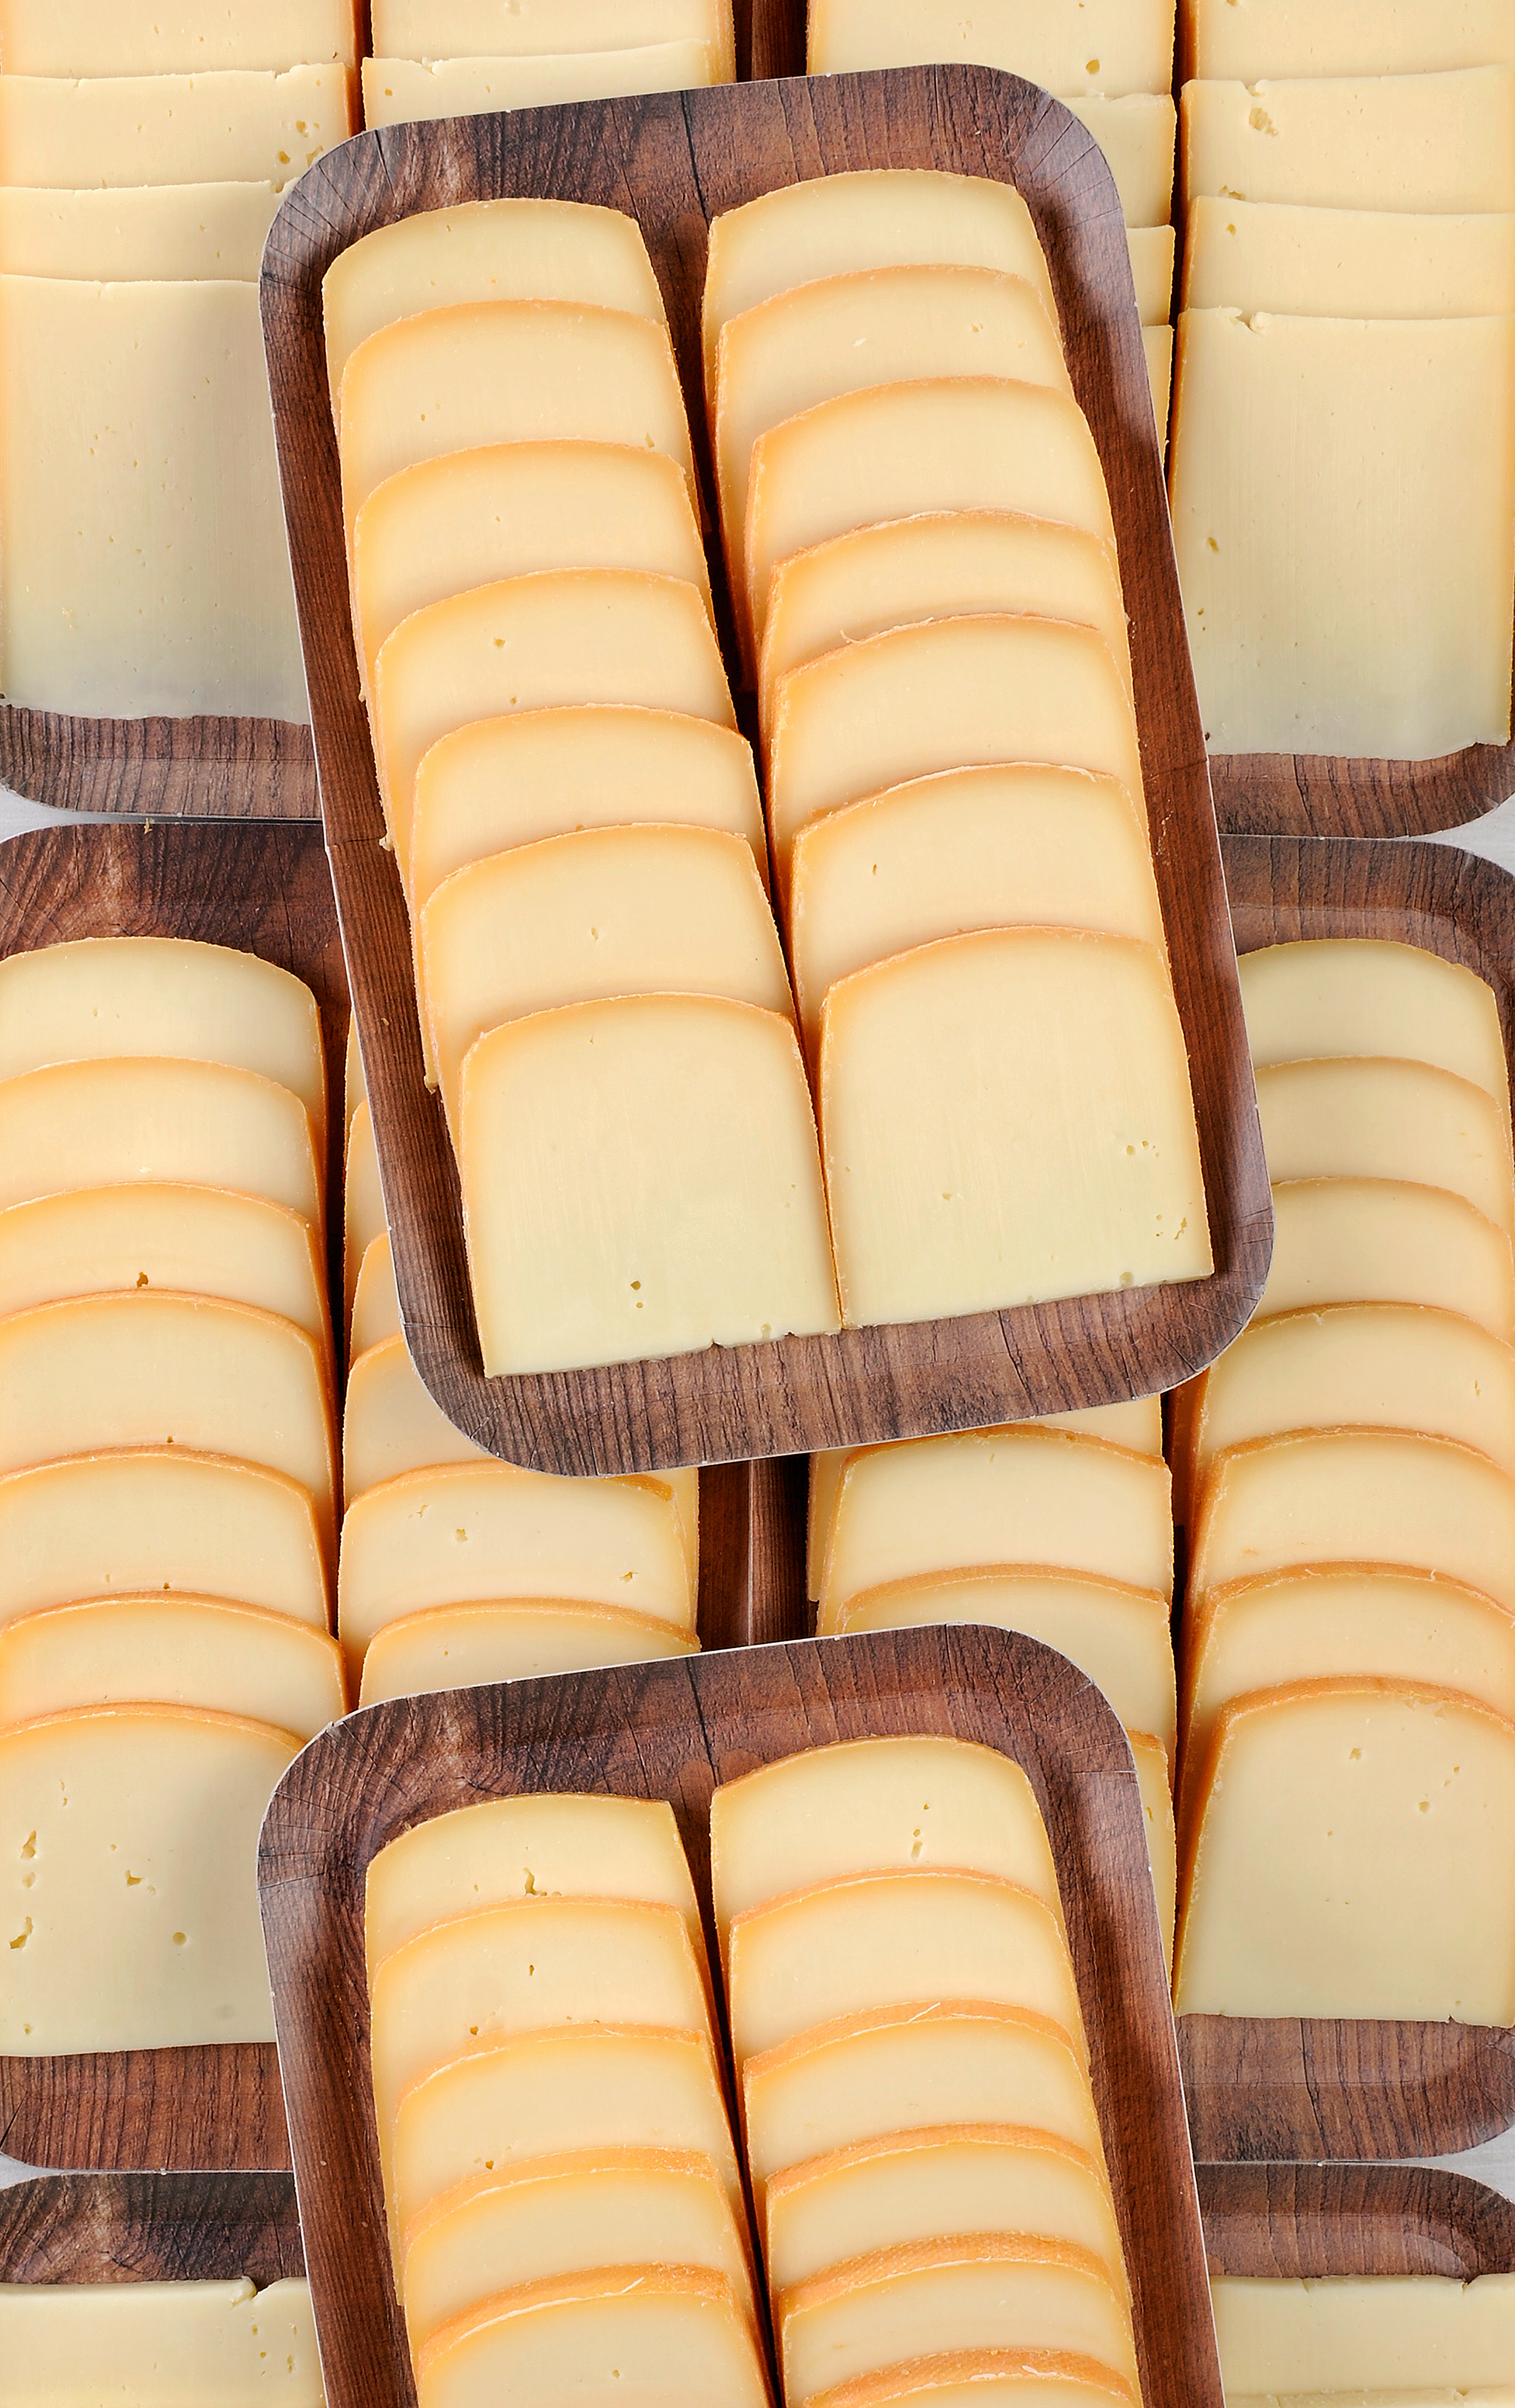 Vente fromages La raclette 5/6 personnes - Annecy Haute Savoie